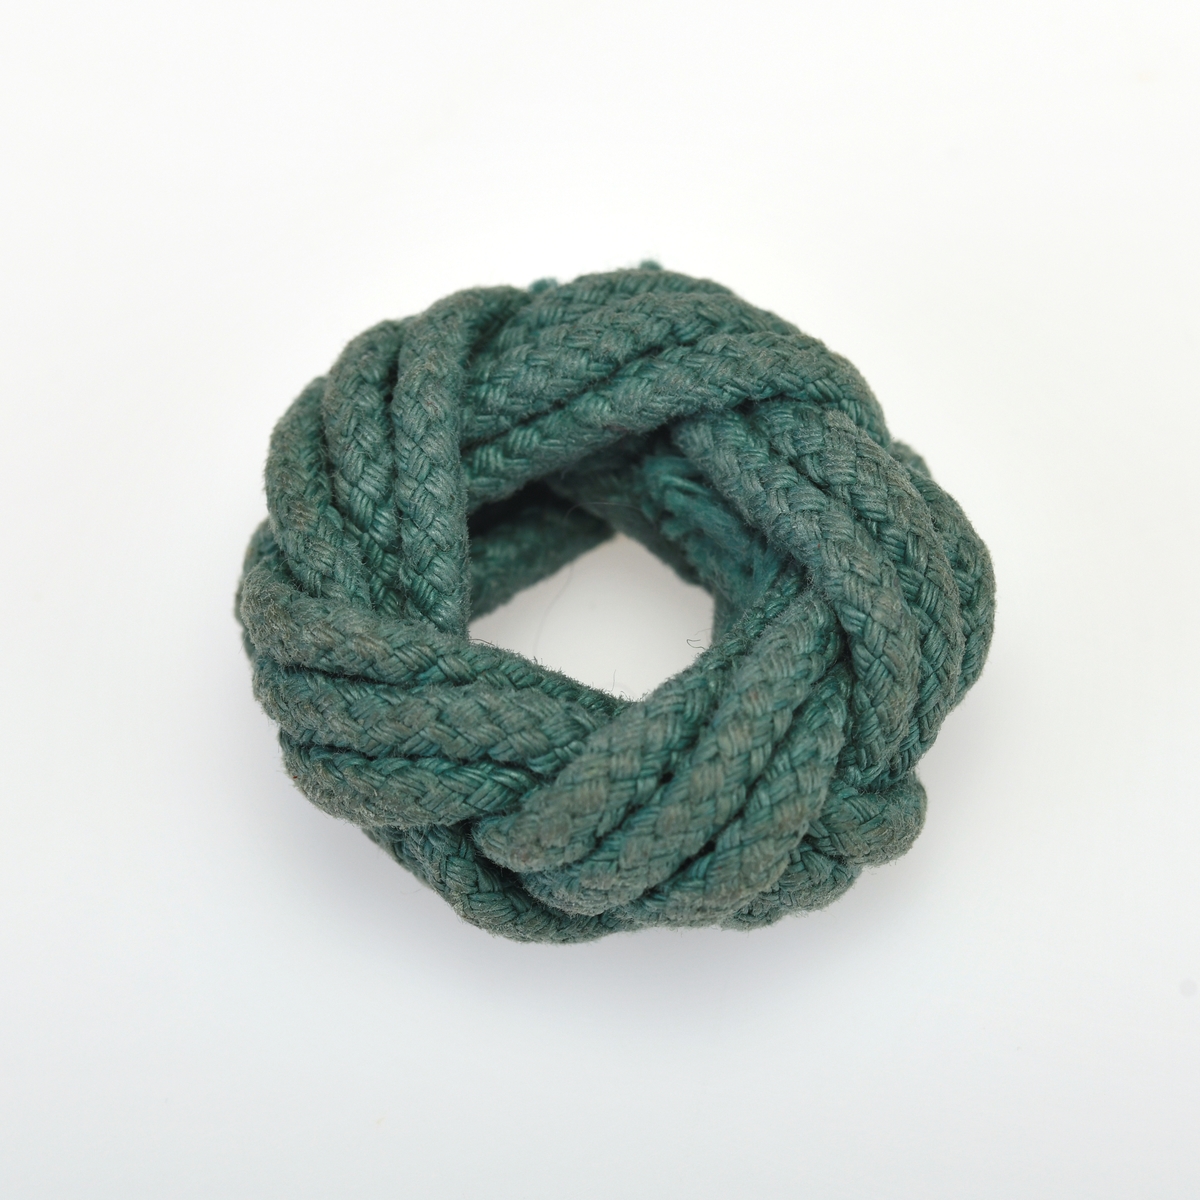 En skjerfknute/speiderknute flettet av grønn bomullssnor. Denne typen knute ble brukt av guttespeidere i alderen 11-16 år (speidere i tropp) frem til 1978.